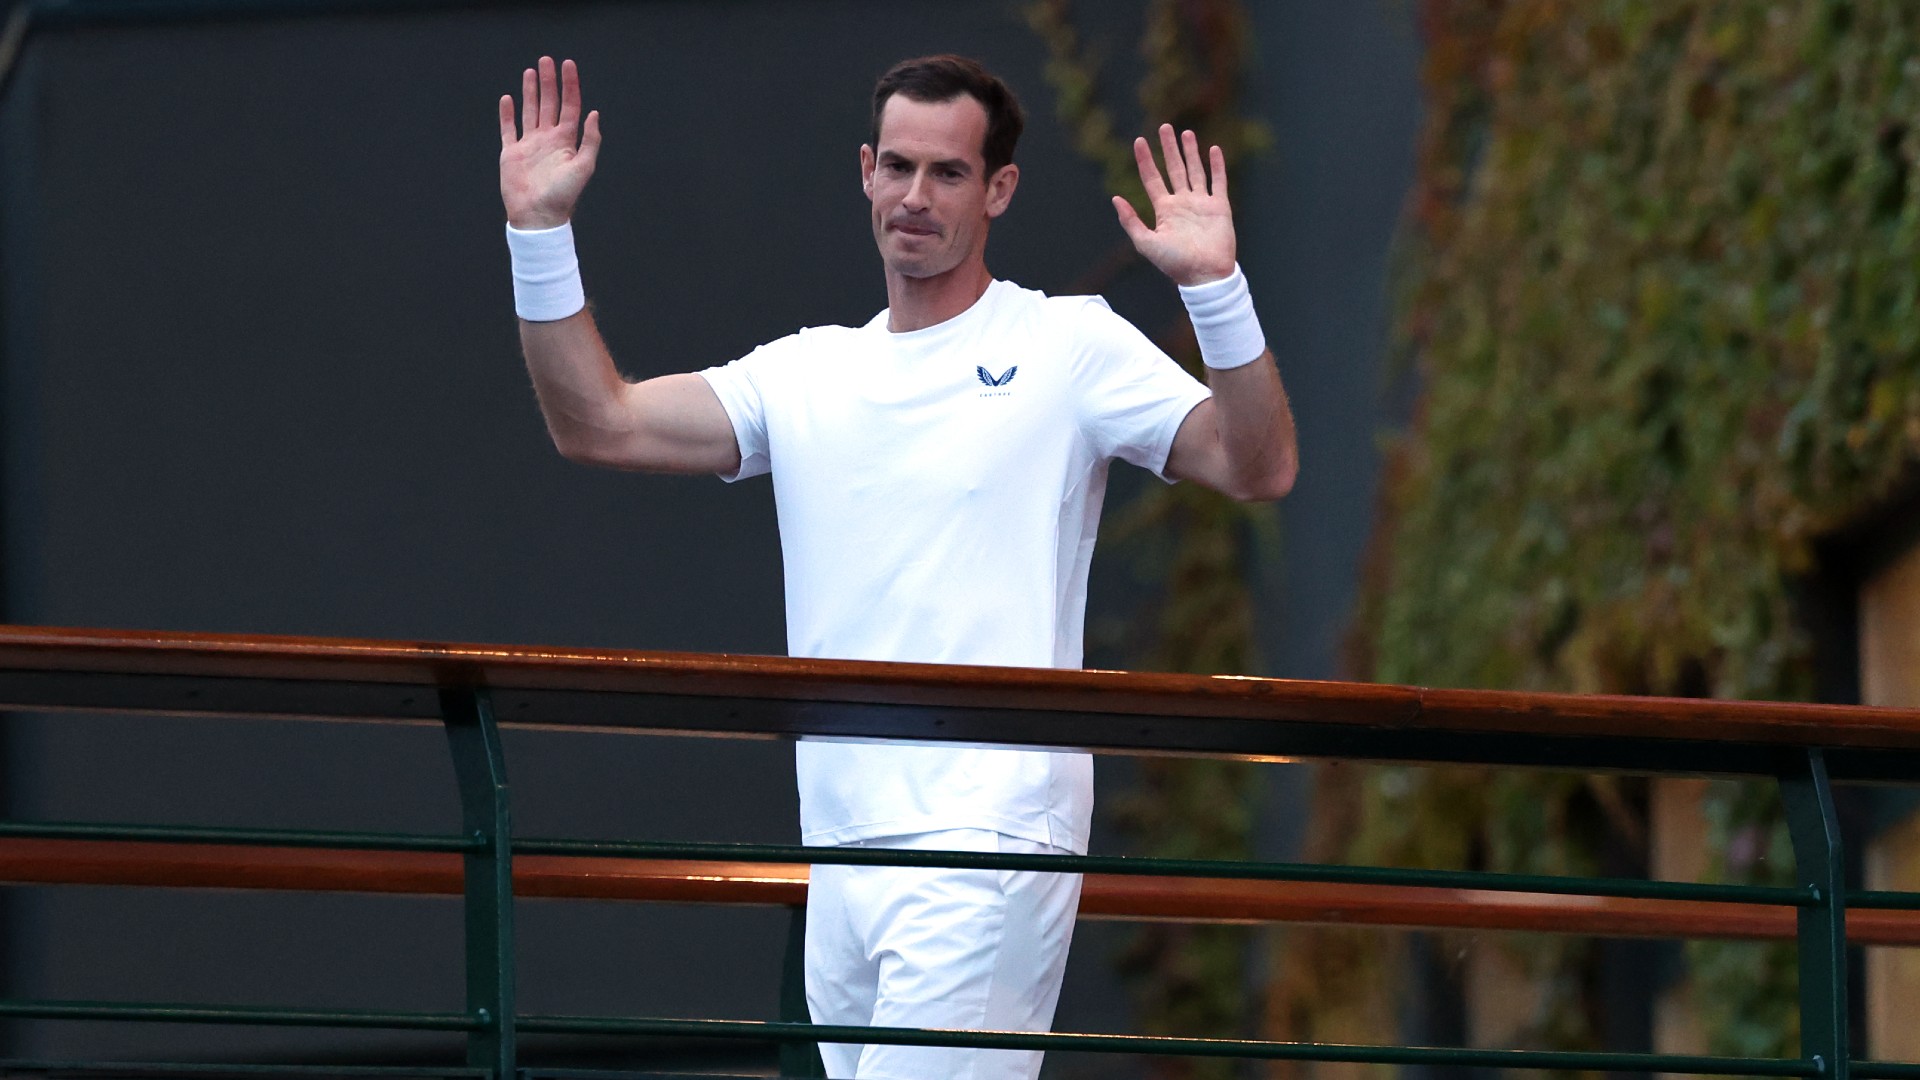 Murray played last Wimbledon match